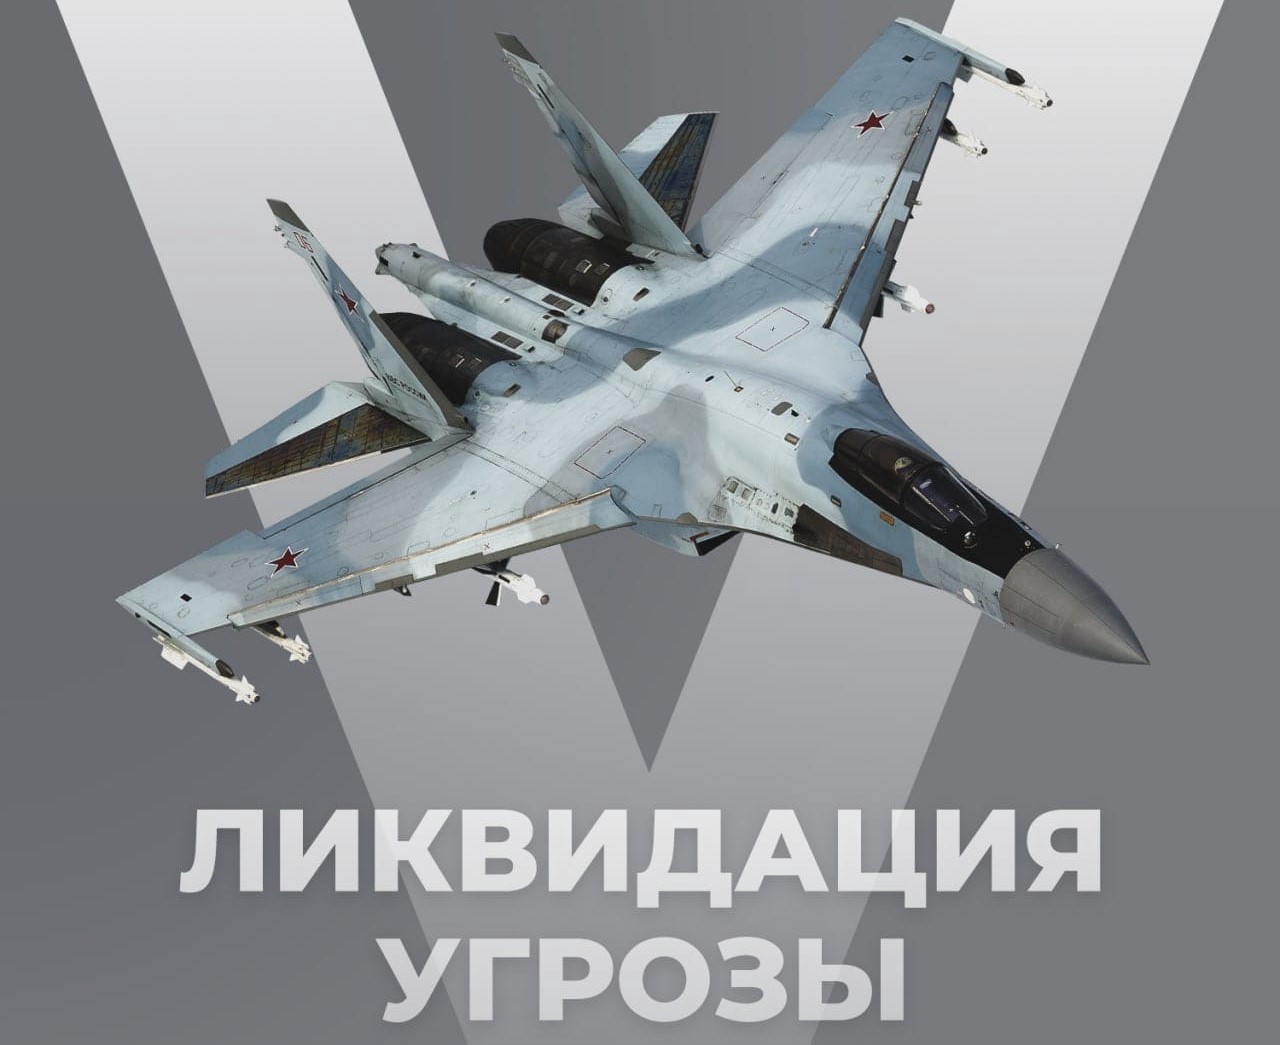 В Минобороны РФ сообщили об уничтожении еще трех украинских самолетов: Су-24, Су-25 и Су-27